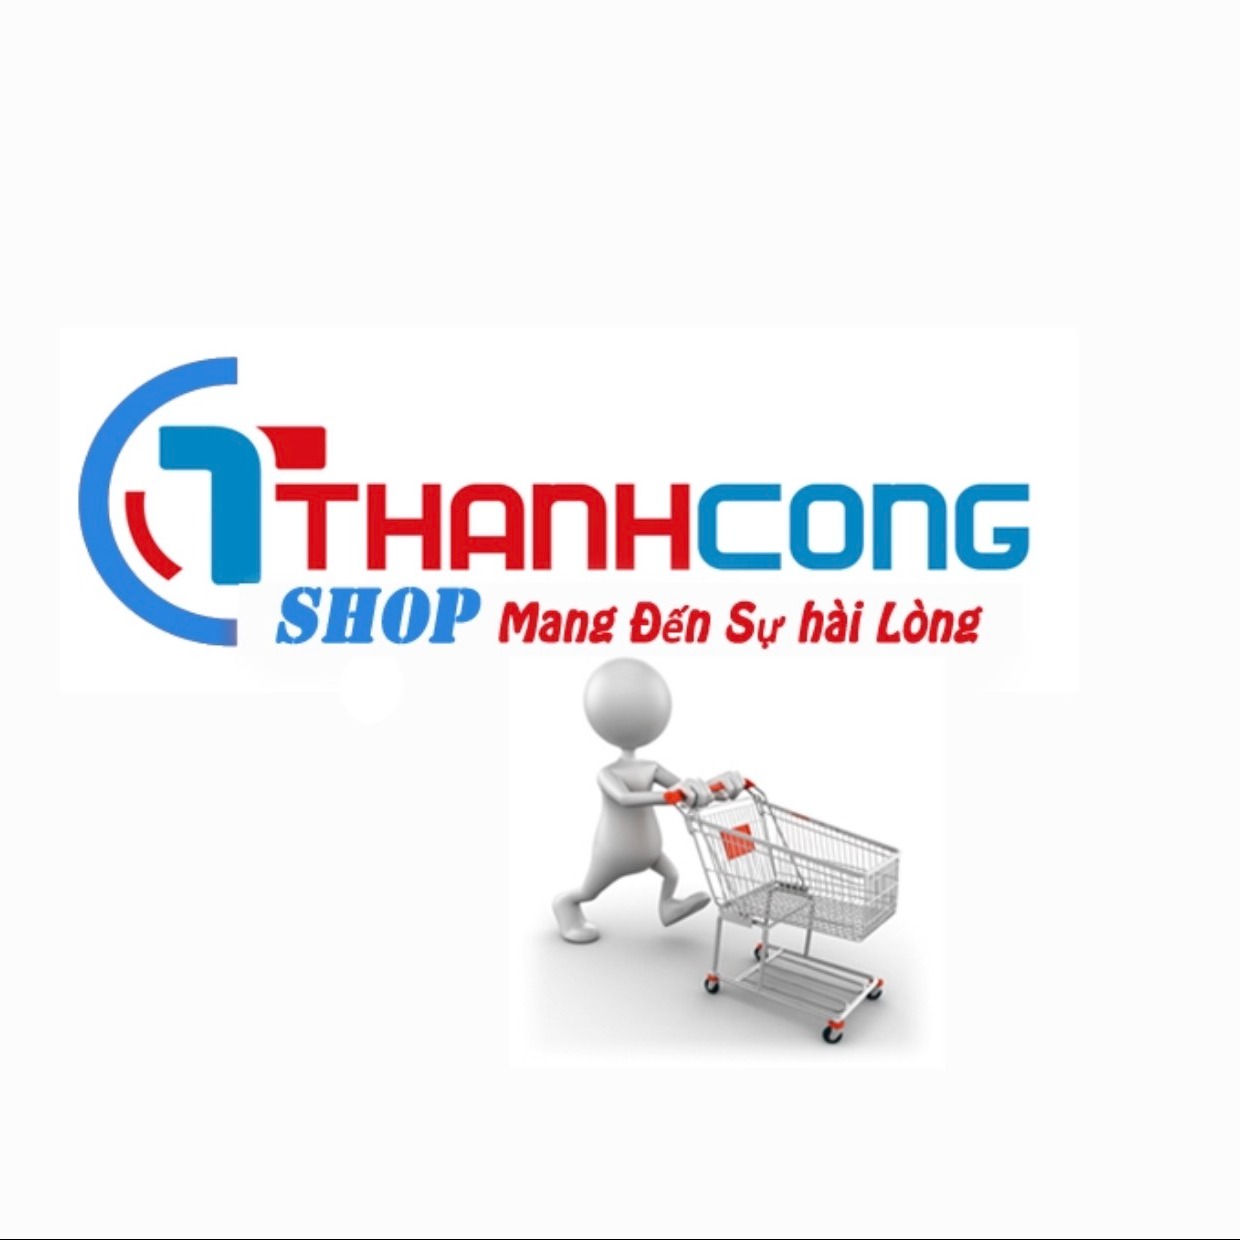 THANH CONG SHOP